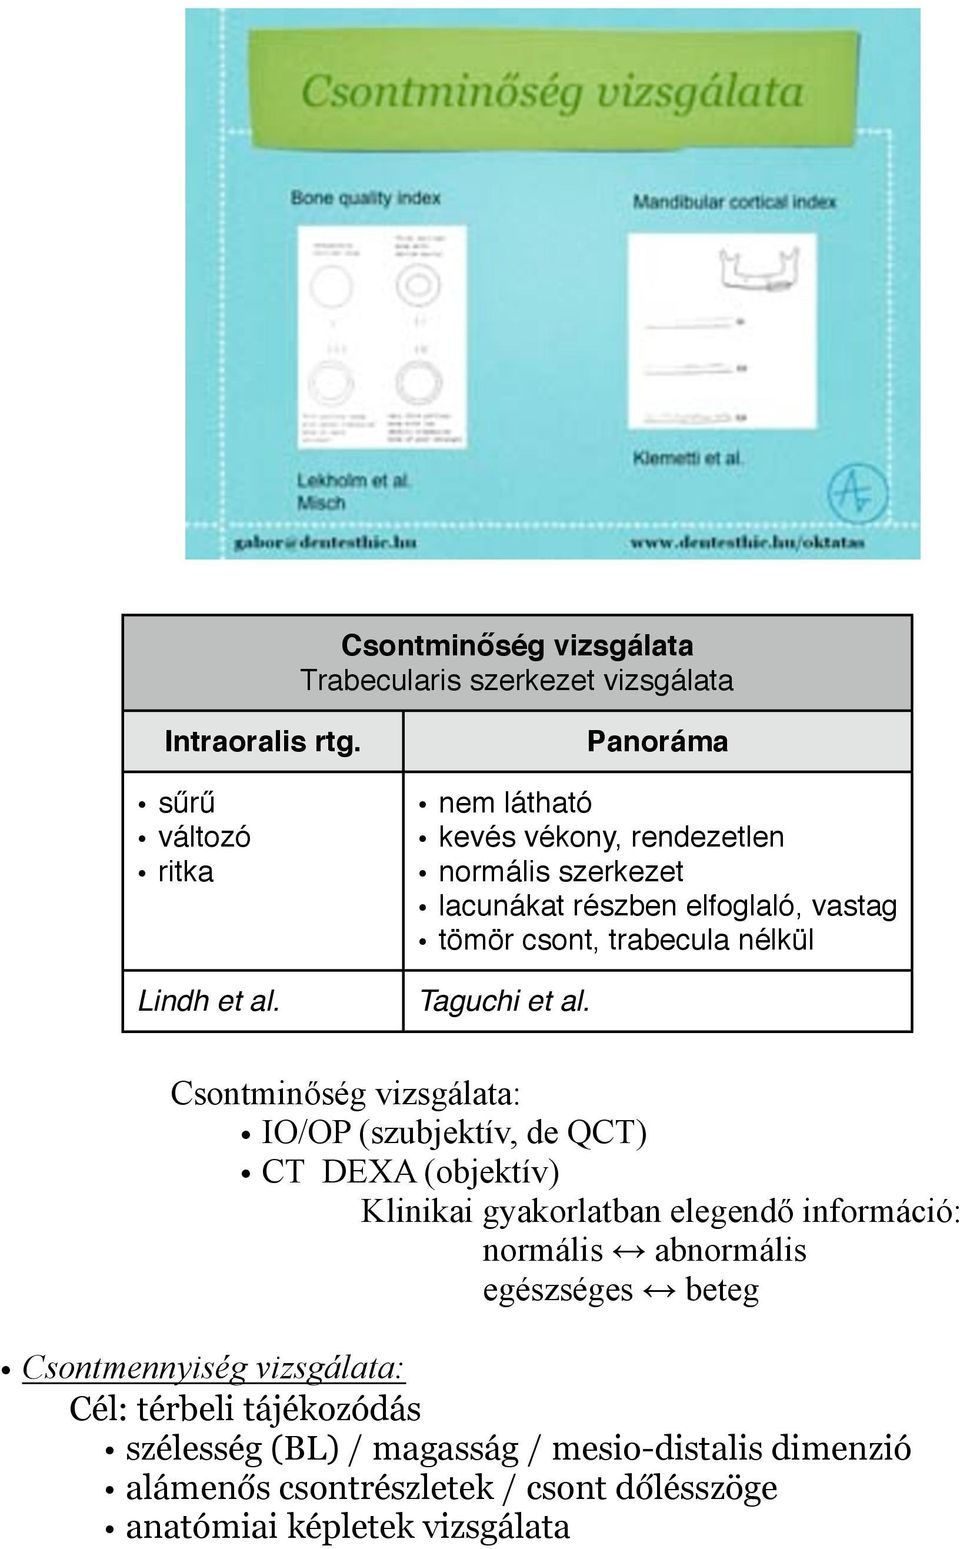 Csontminőség vizsgálata: IO/OP (szubjektív, de QCT) CT DEXA (objektív) Klinikai gyakorlatban elegendő információ: normális abnormális egészséges